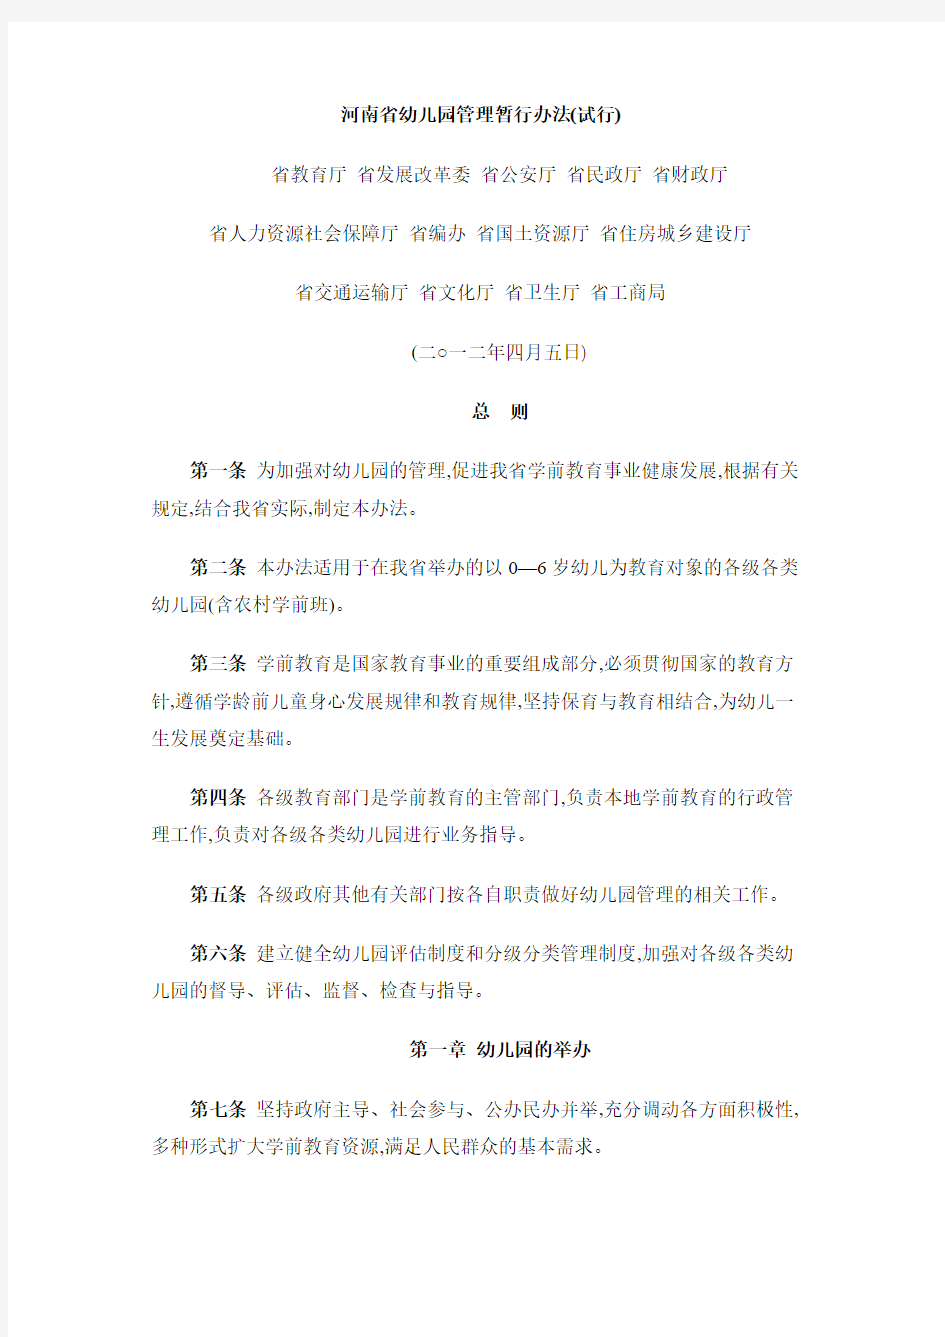 河南省幼儿园管理暂行办法(免费)